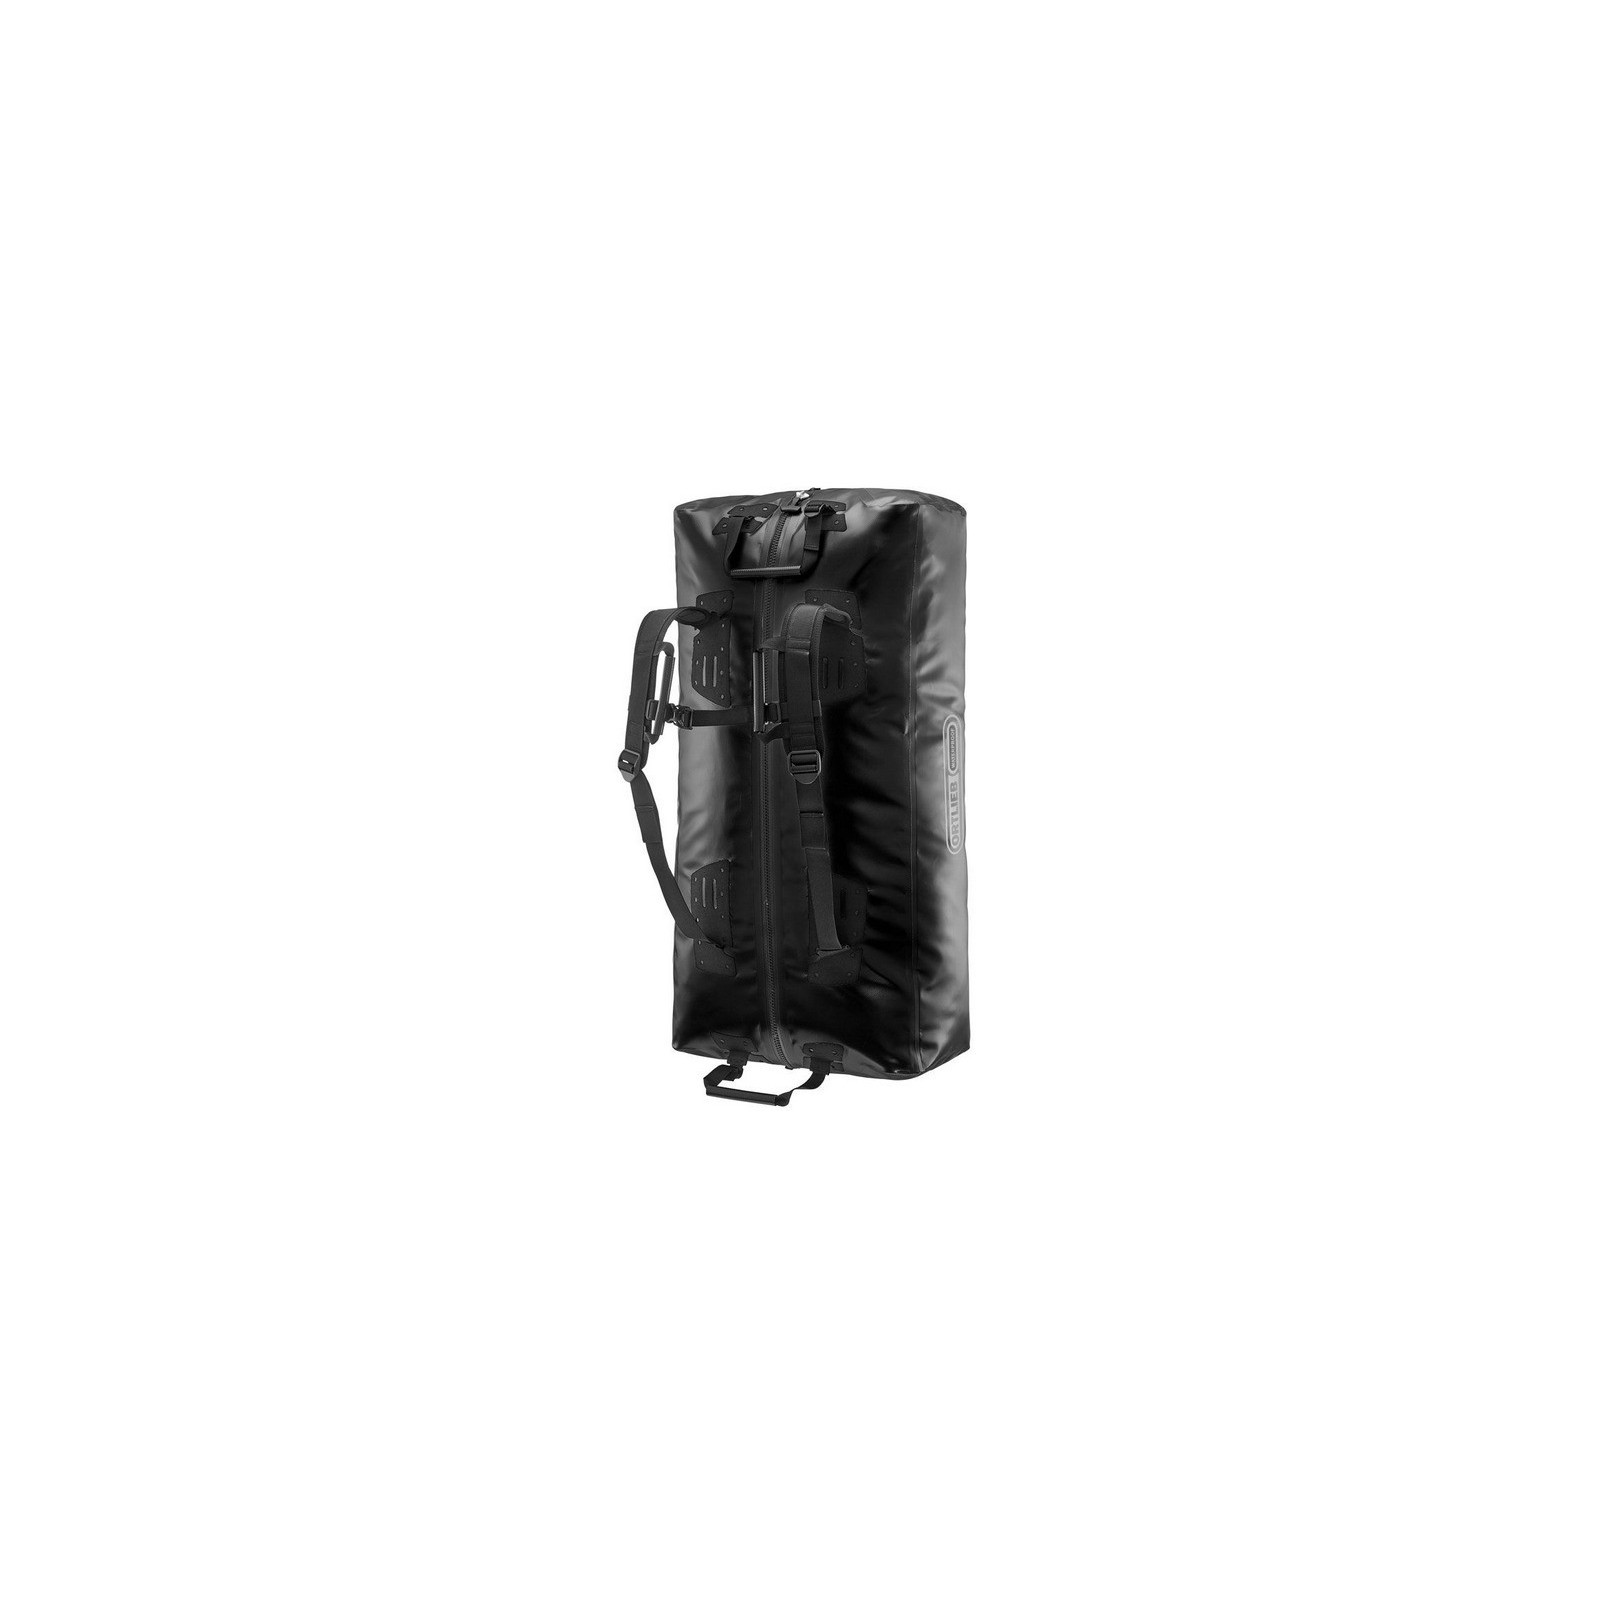 https://www.xxcycle.com/51450-zoom_default/ortlieb-big-zip-travel-bag-black.jpg